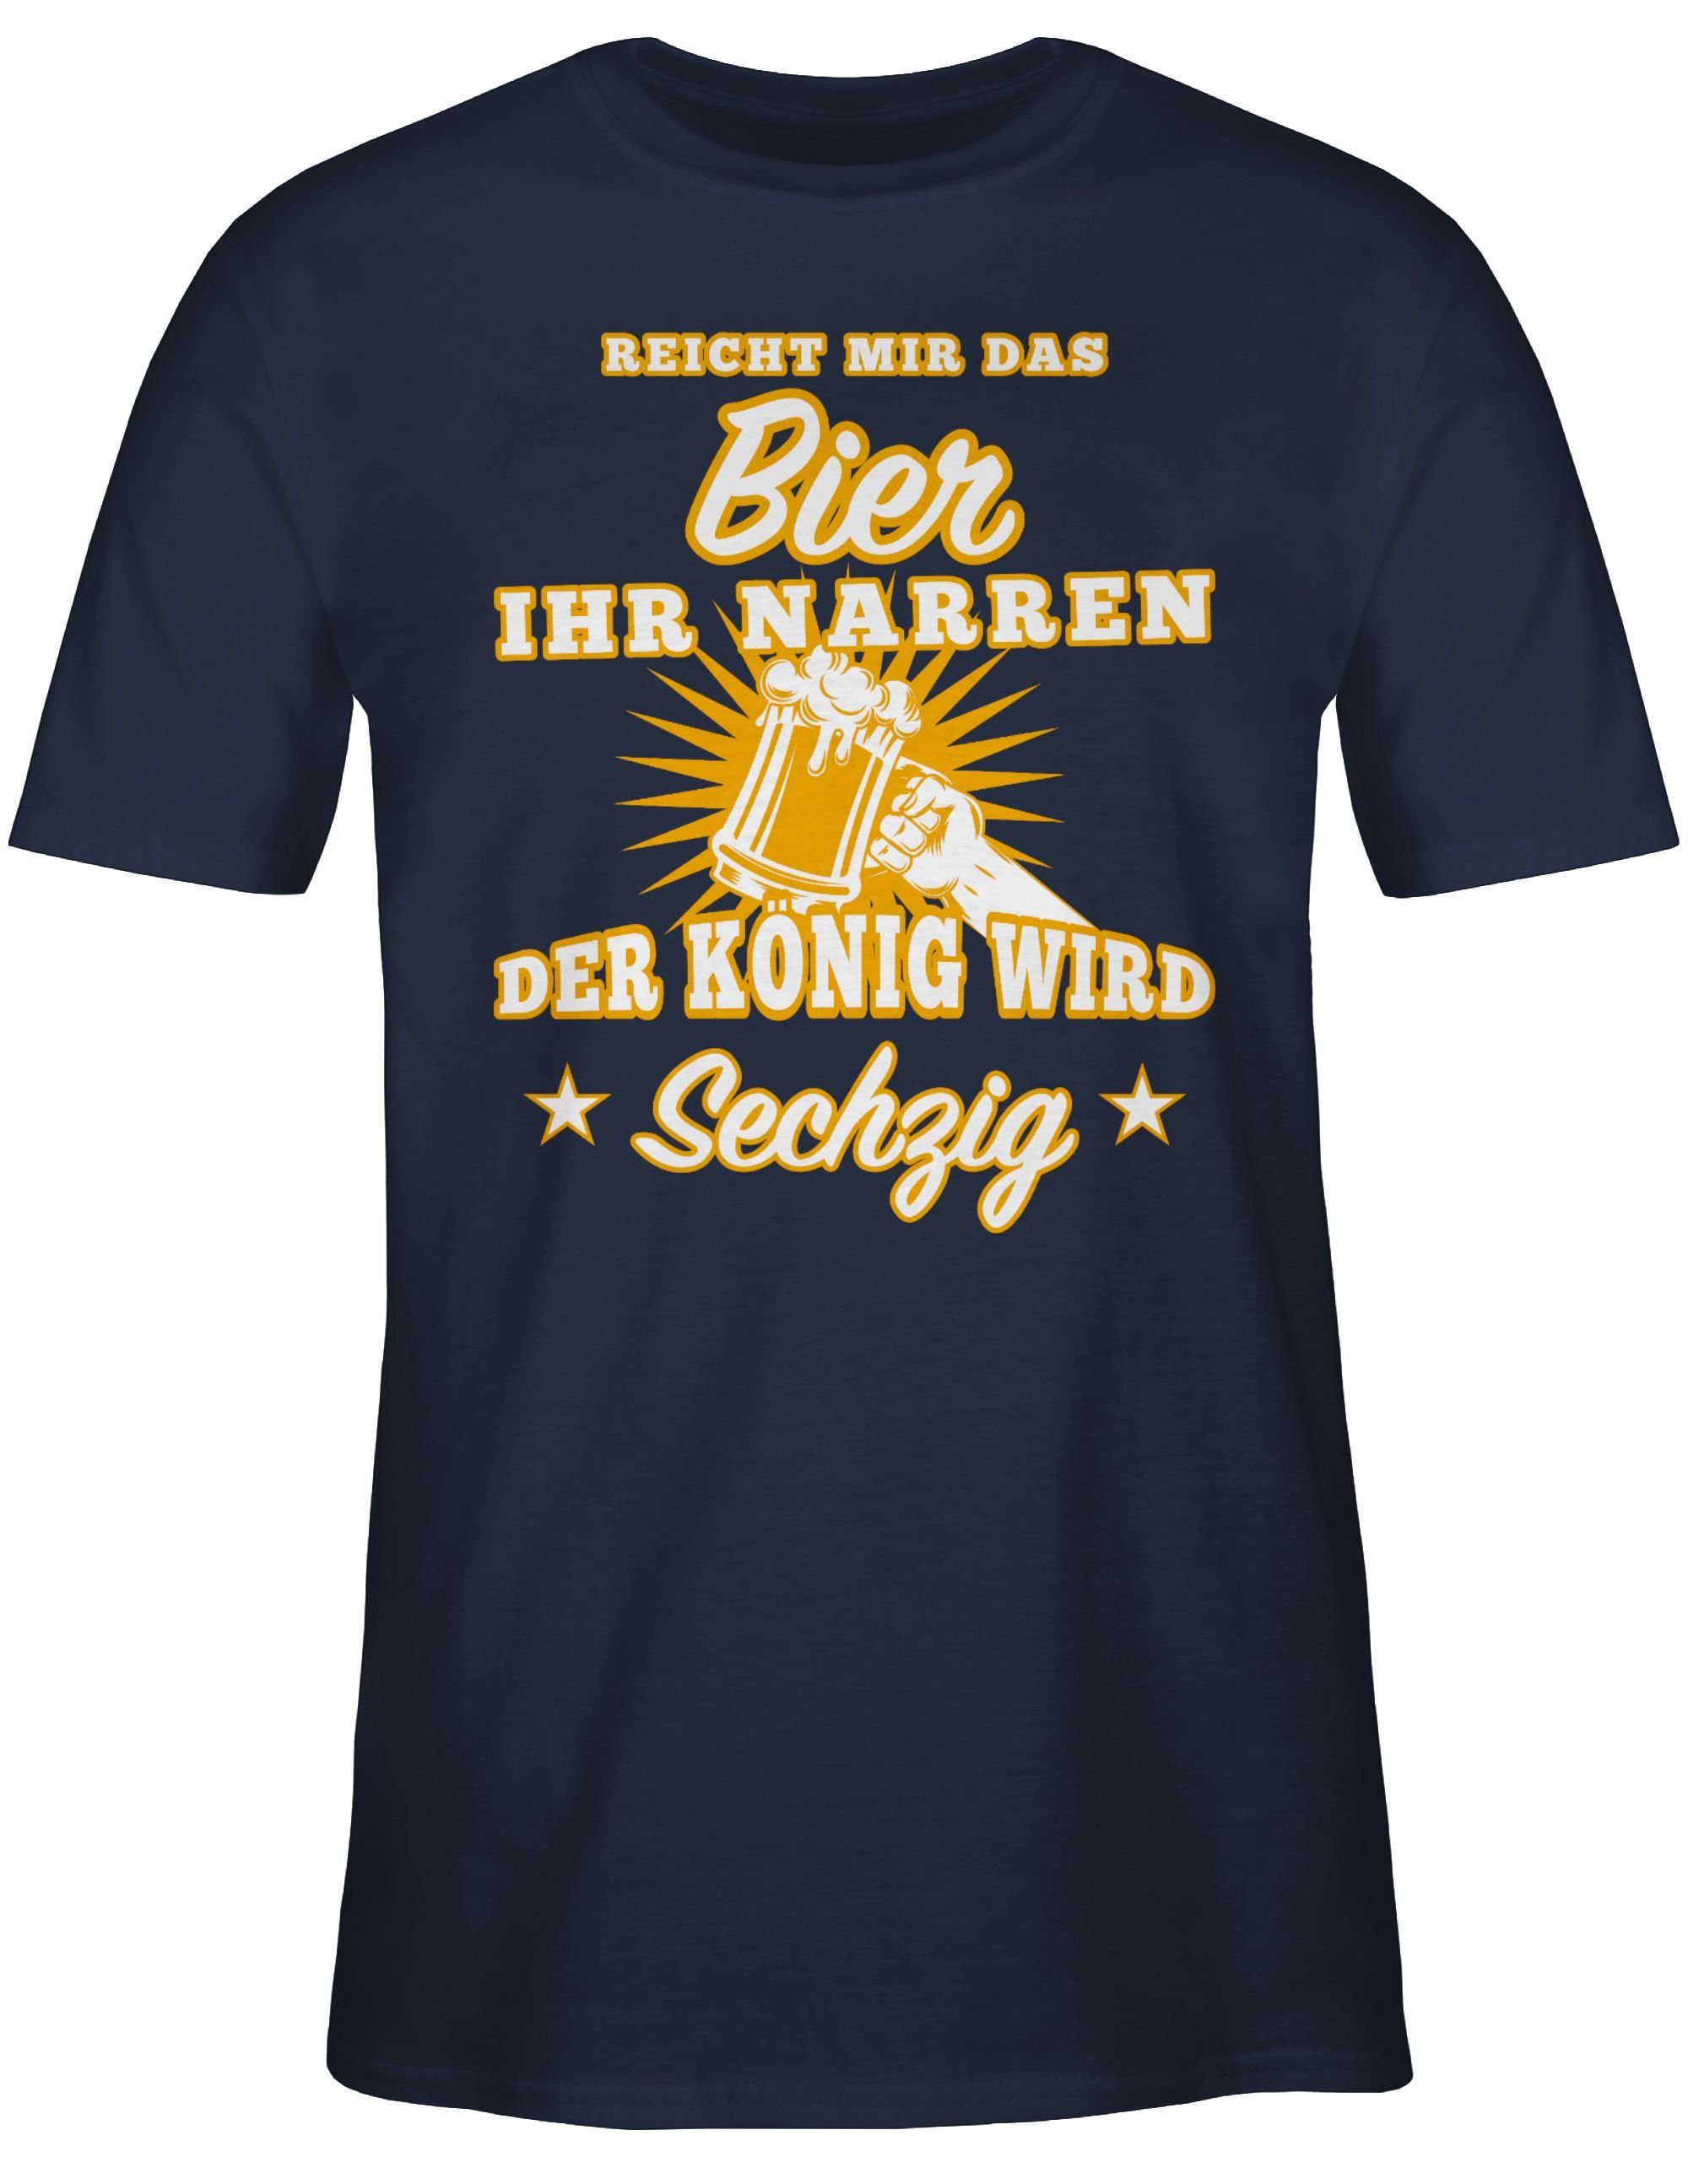 Geburtstag 2 Sechzig T-Shirt ihr Bier Narren Reicht Blau 60. mir Shirtracer das Navy